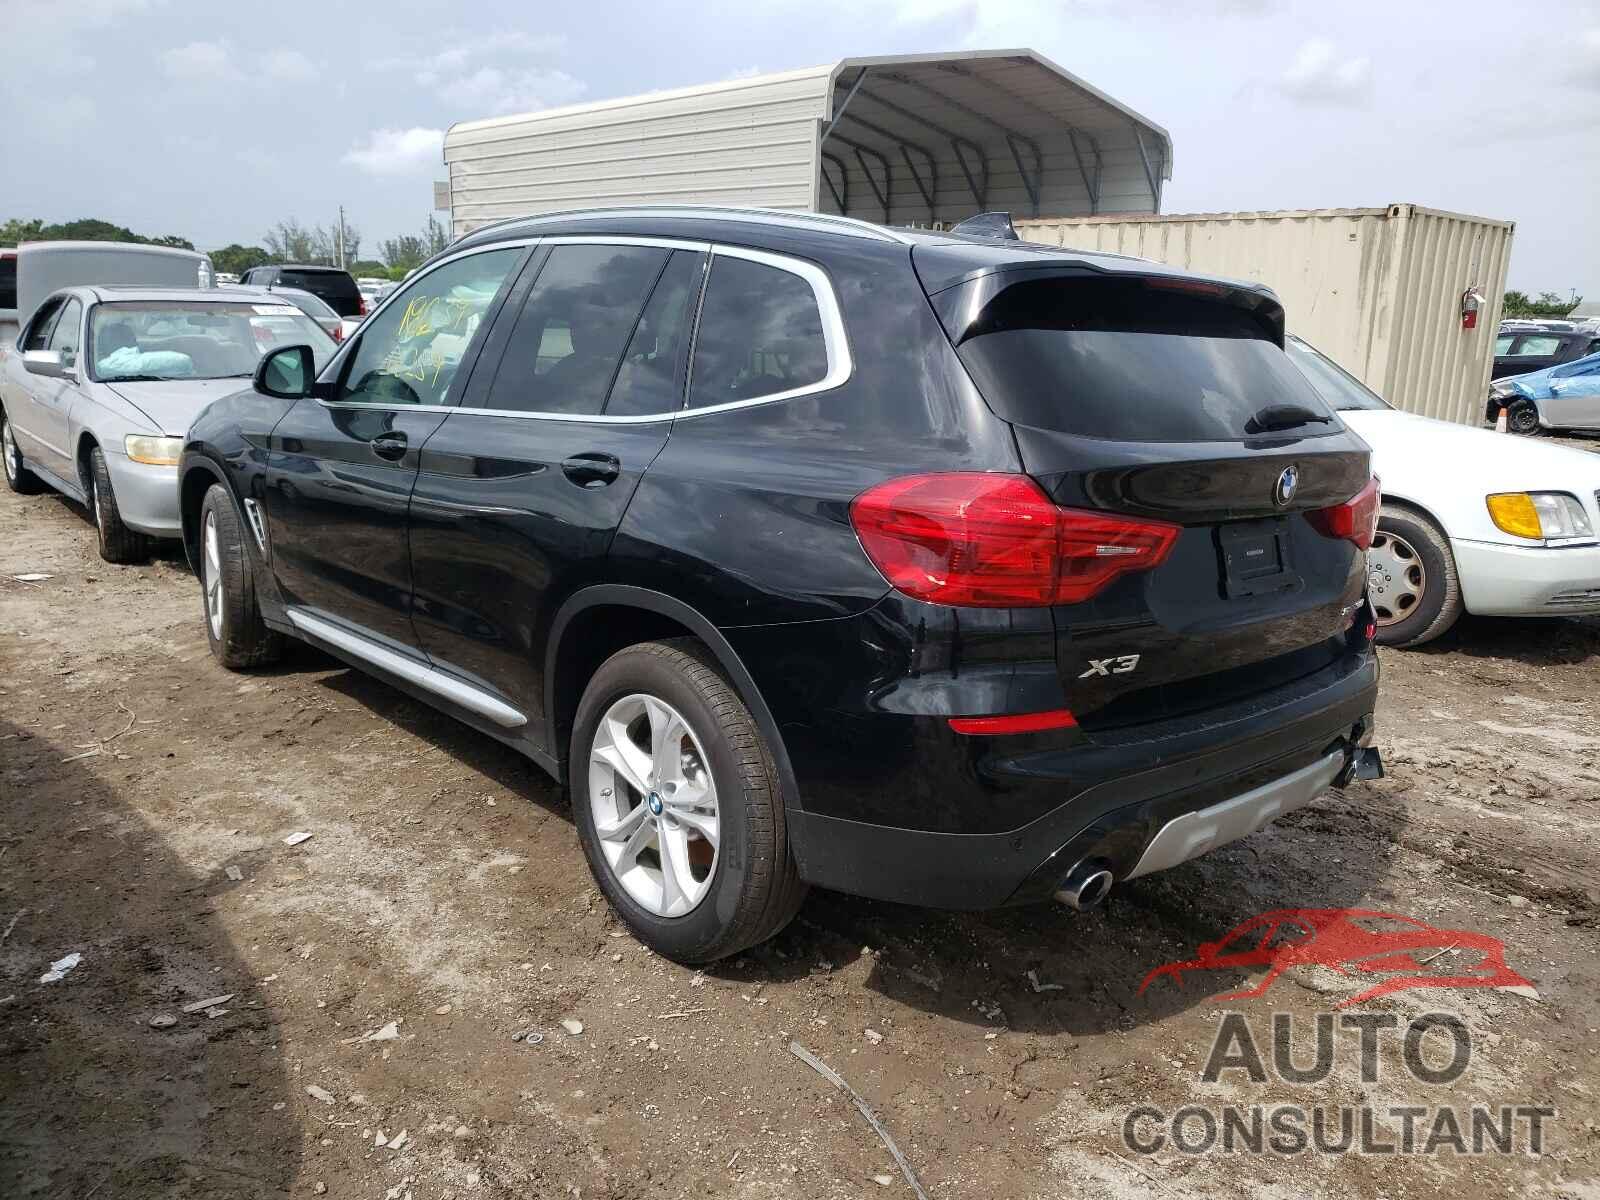 BMW X3 2019 - 5UXTR7C59KLR53454